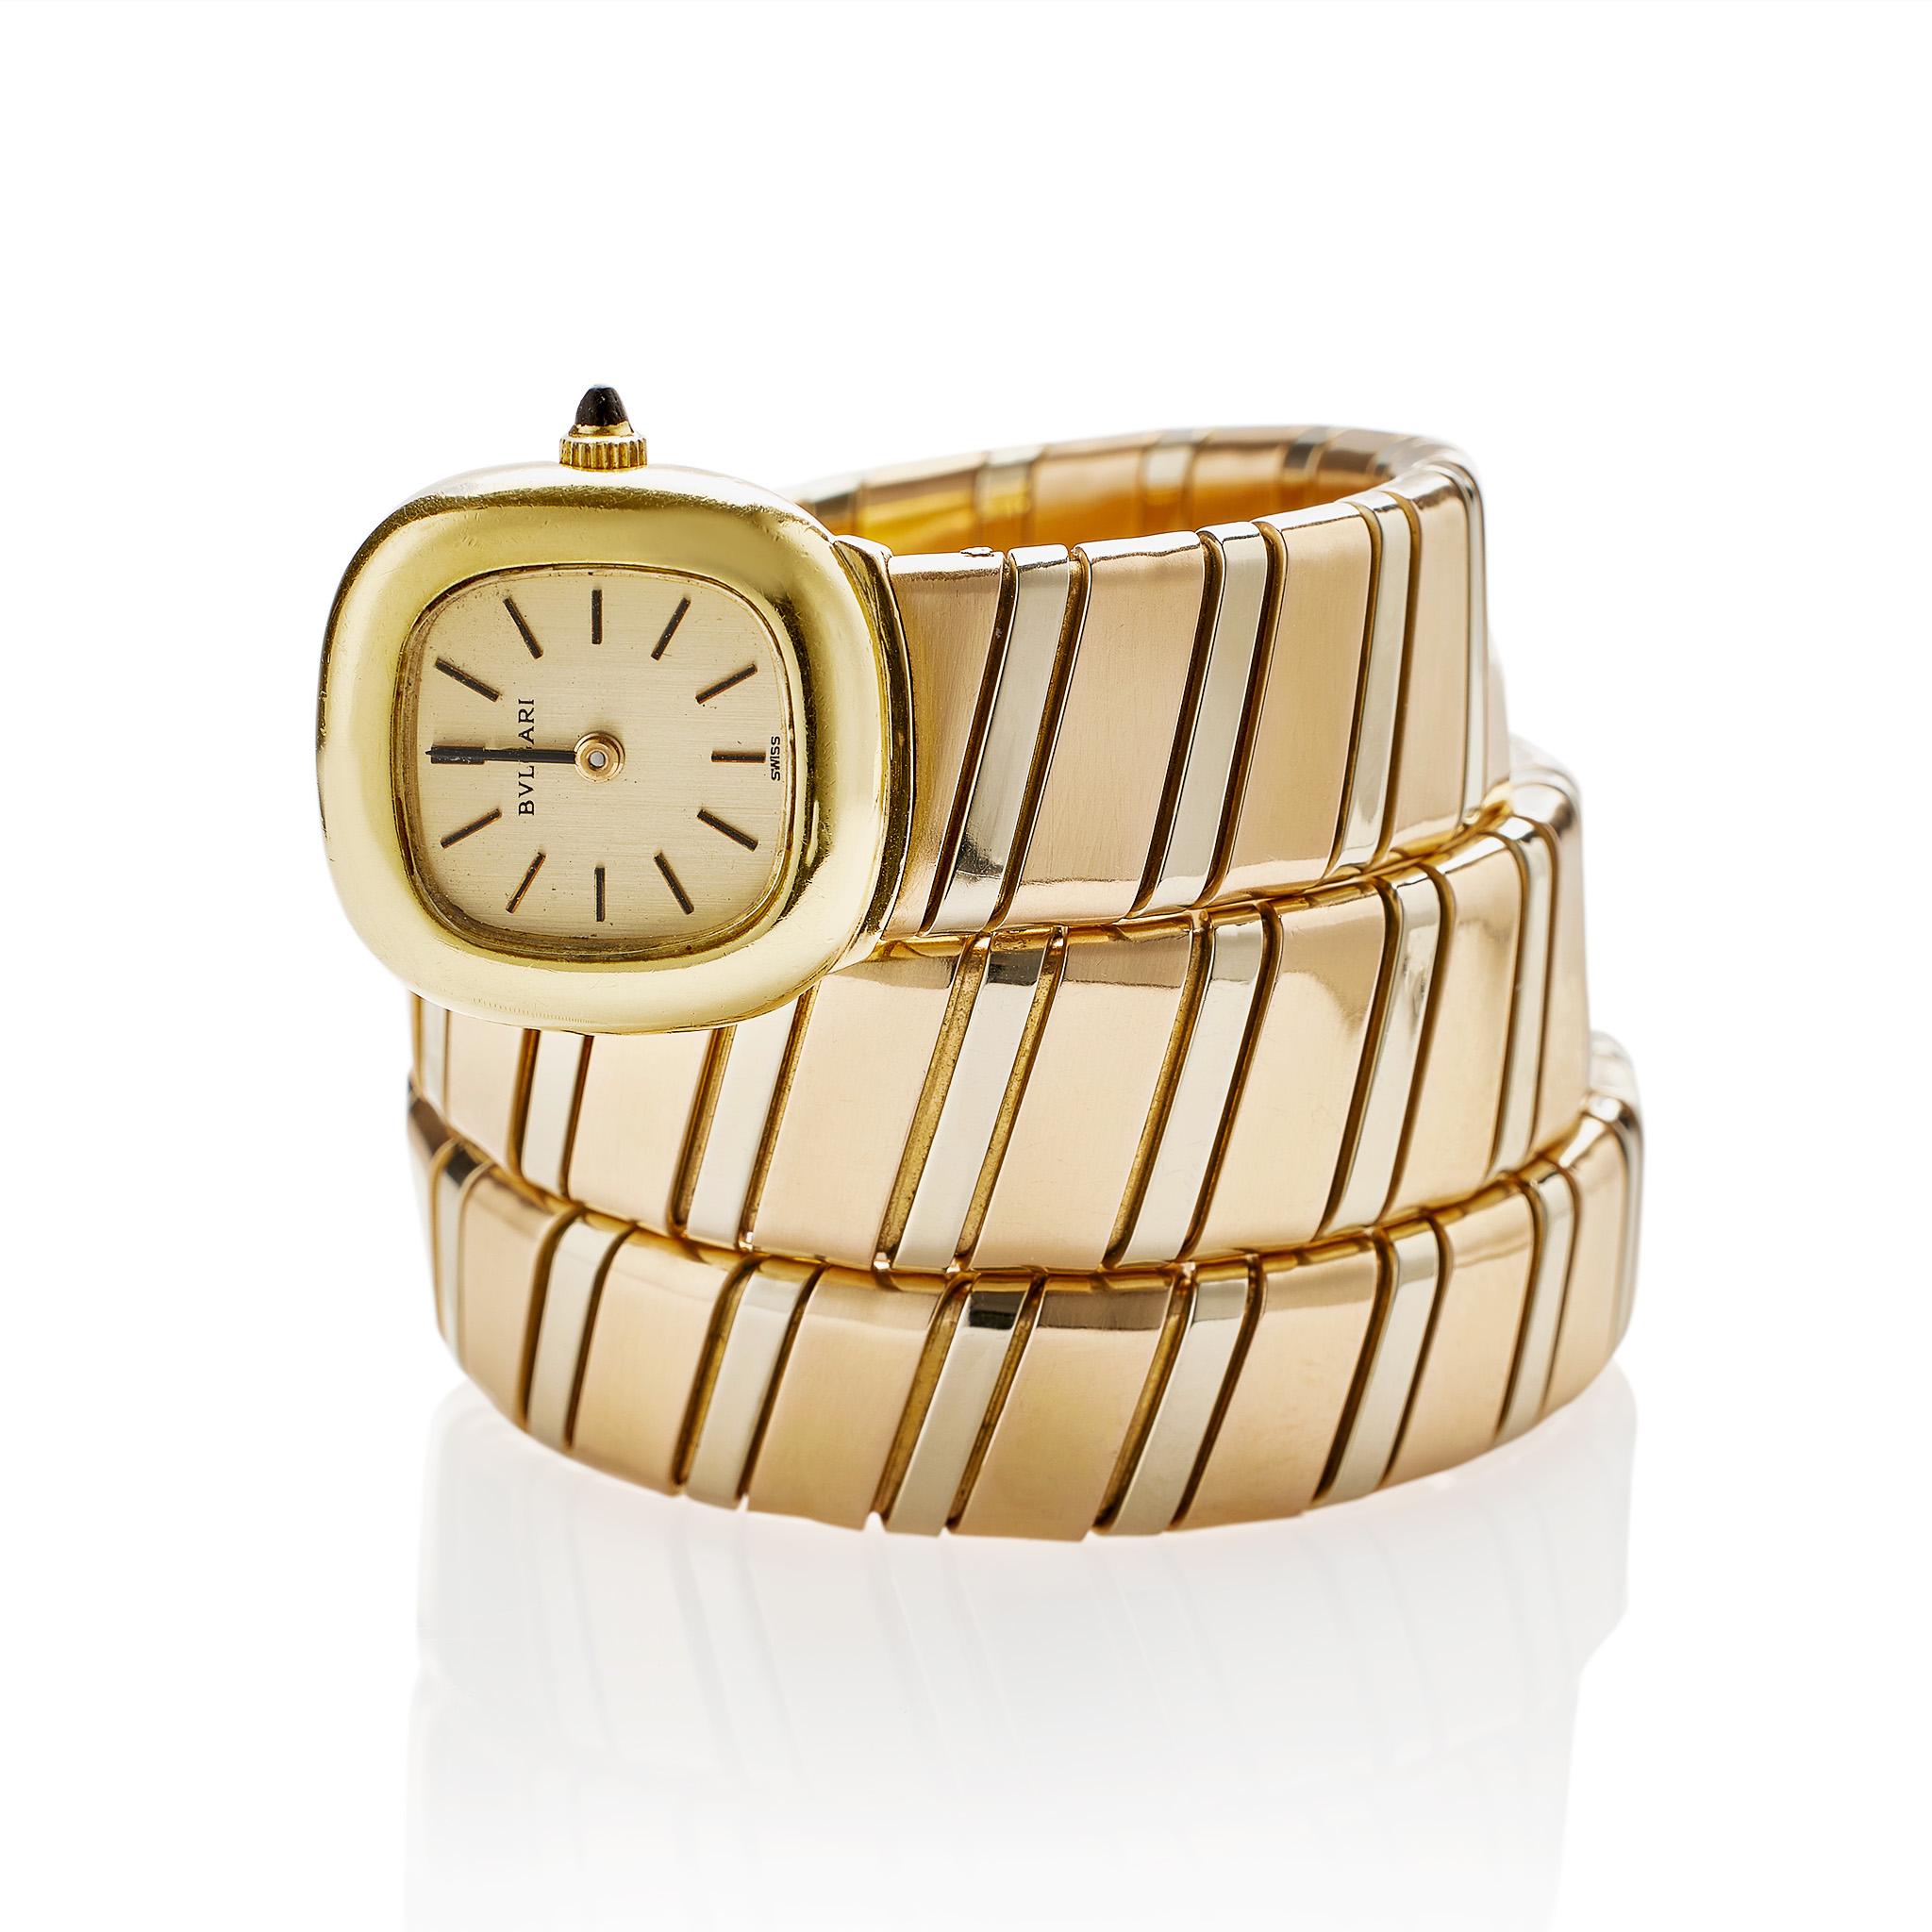 Créée vers 1970, cette montre-bracelet Bulgari Tubogas Serpenti à mouvement automatique est composée d'or tricolore 18 carats. Elle est conçue comme un serpent stylisé avec un corps flexible et enroulé de maillons tubogas en or rose et blanc se